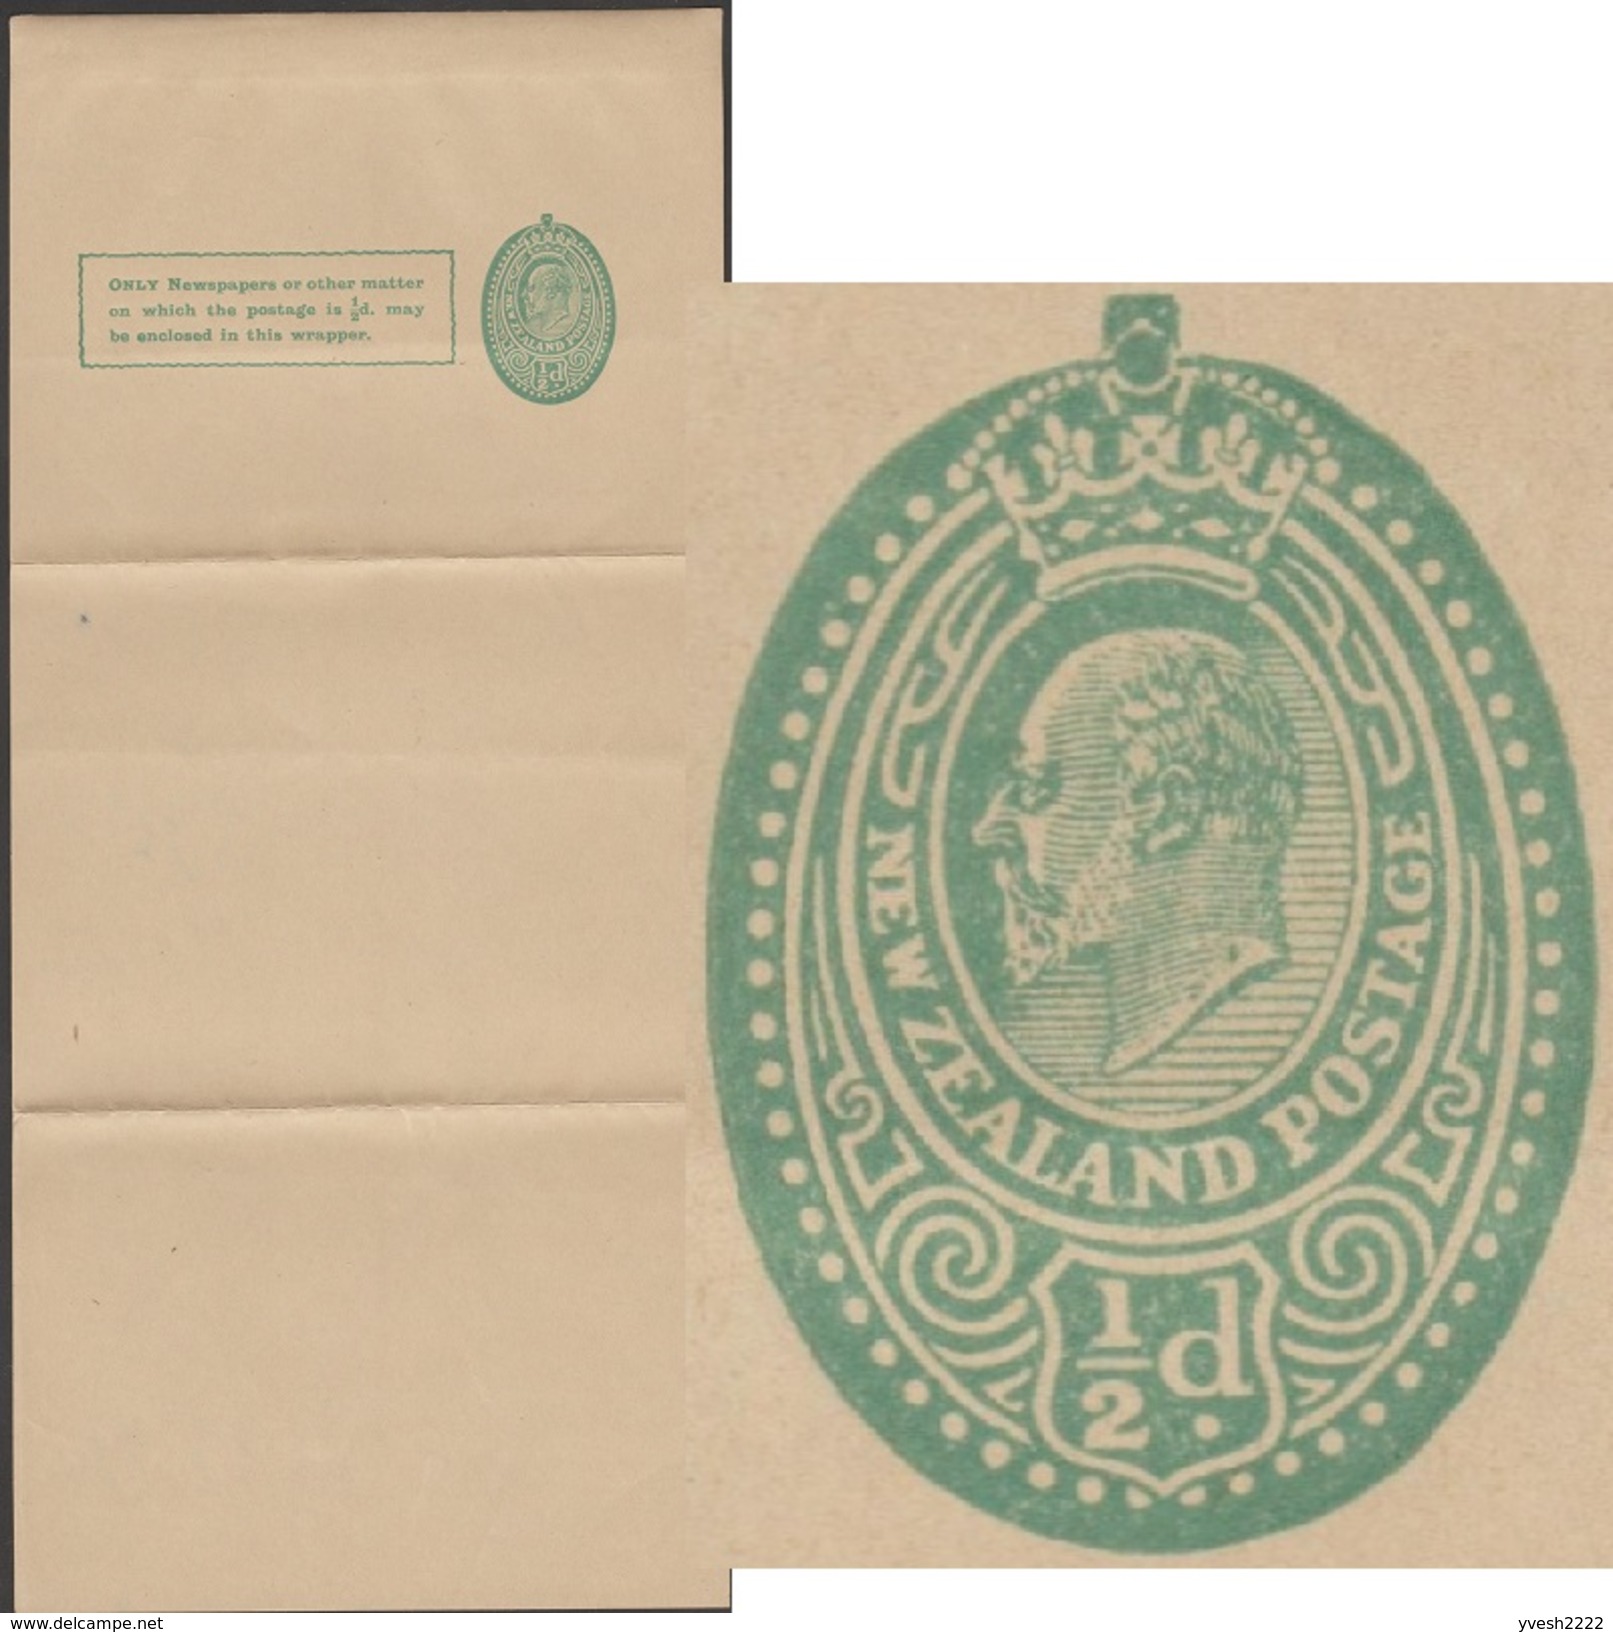 Nouvelle-Zélande Vers 1908. Entier Postal, Bande-journal Édouard VII » (Edward VII). Fraîcheur Exceptionnelle - Entiers Postaux